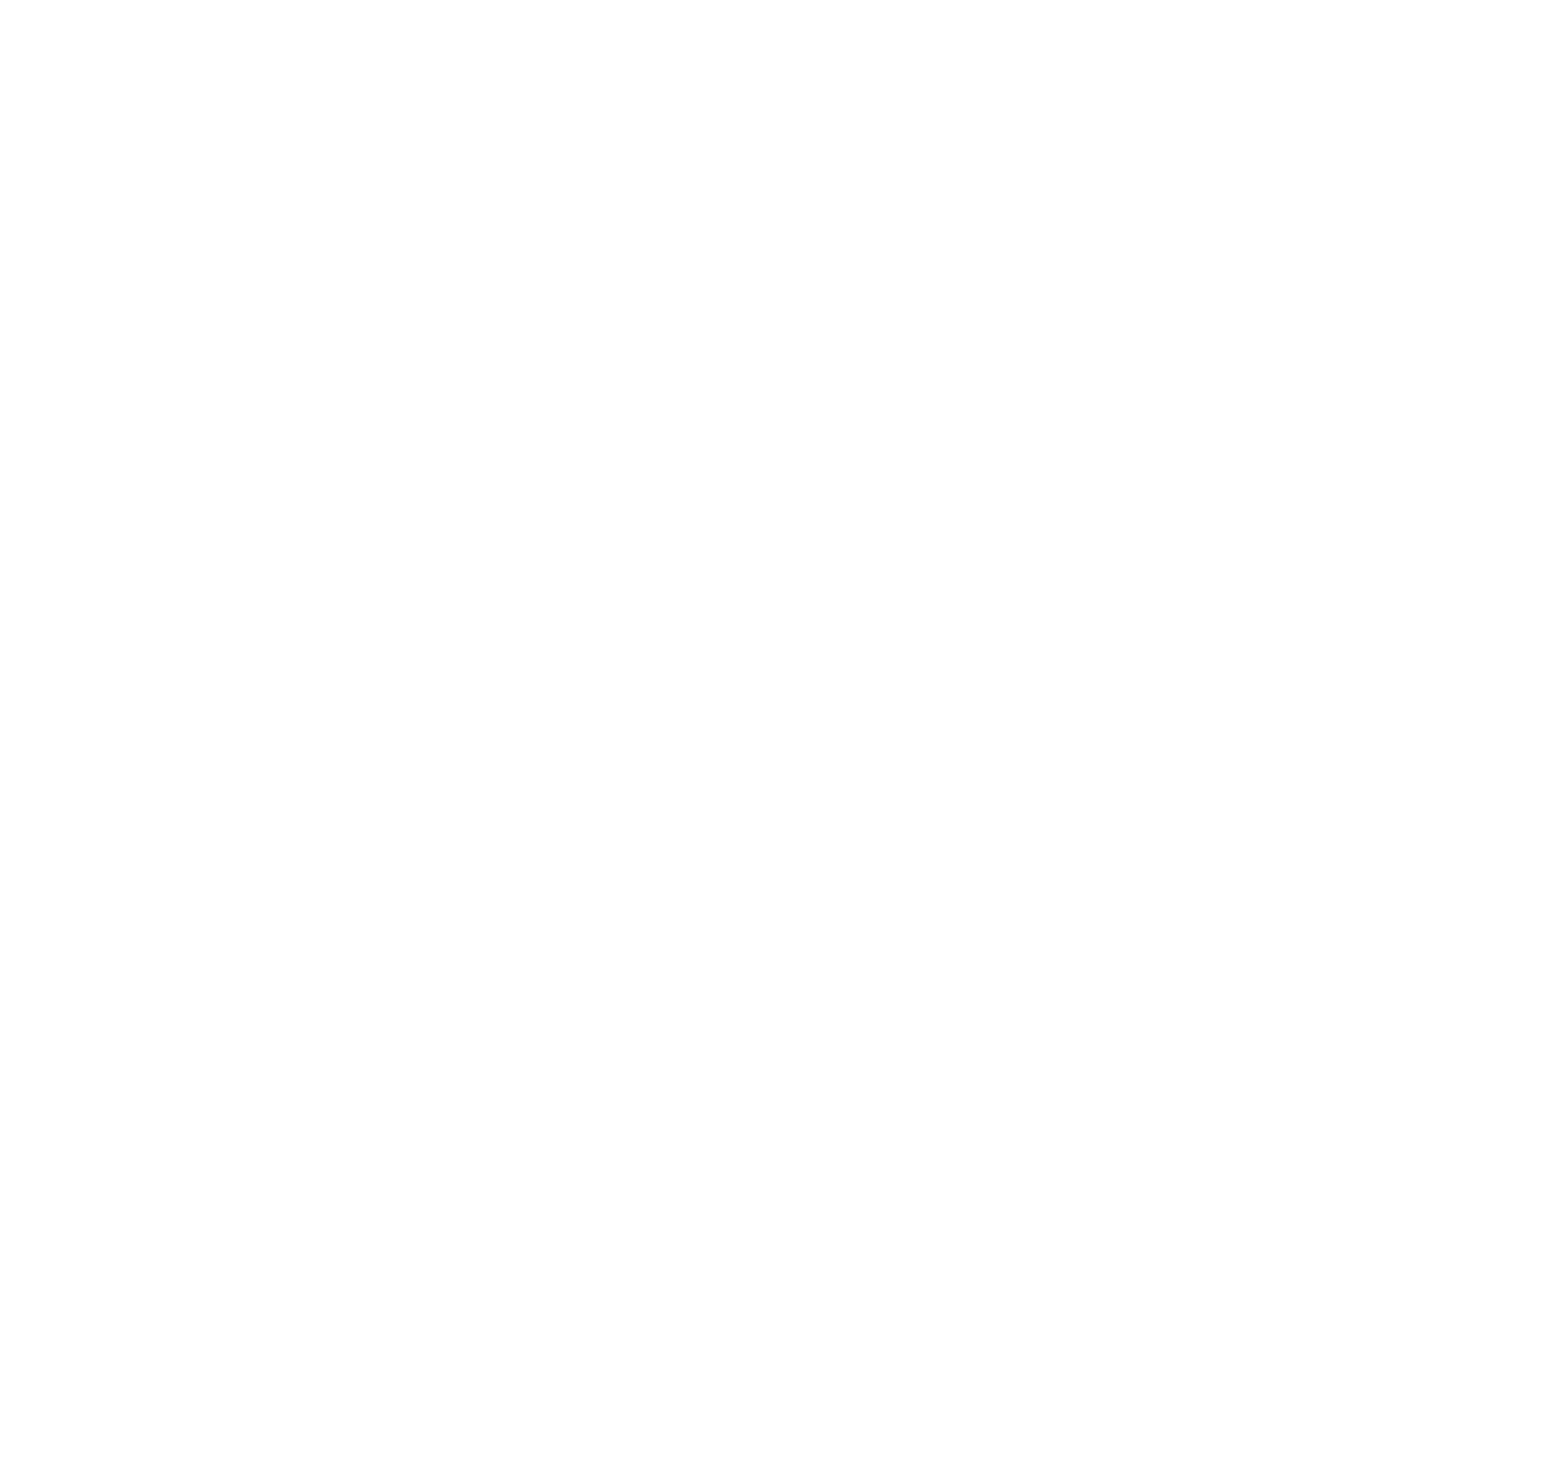 Black and White Spiral Logo - Logos